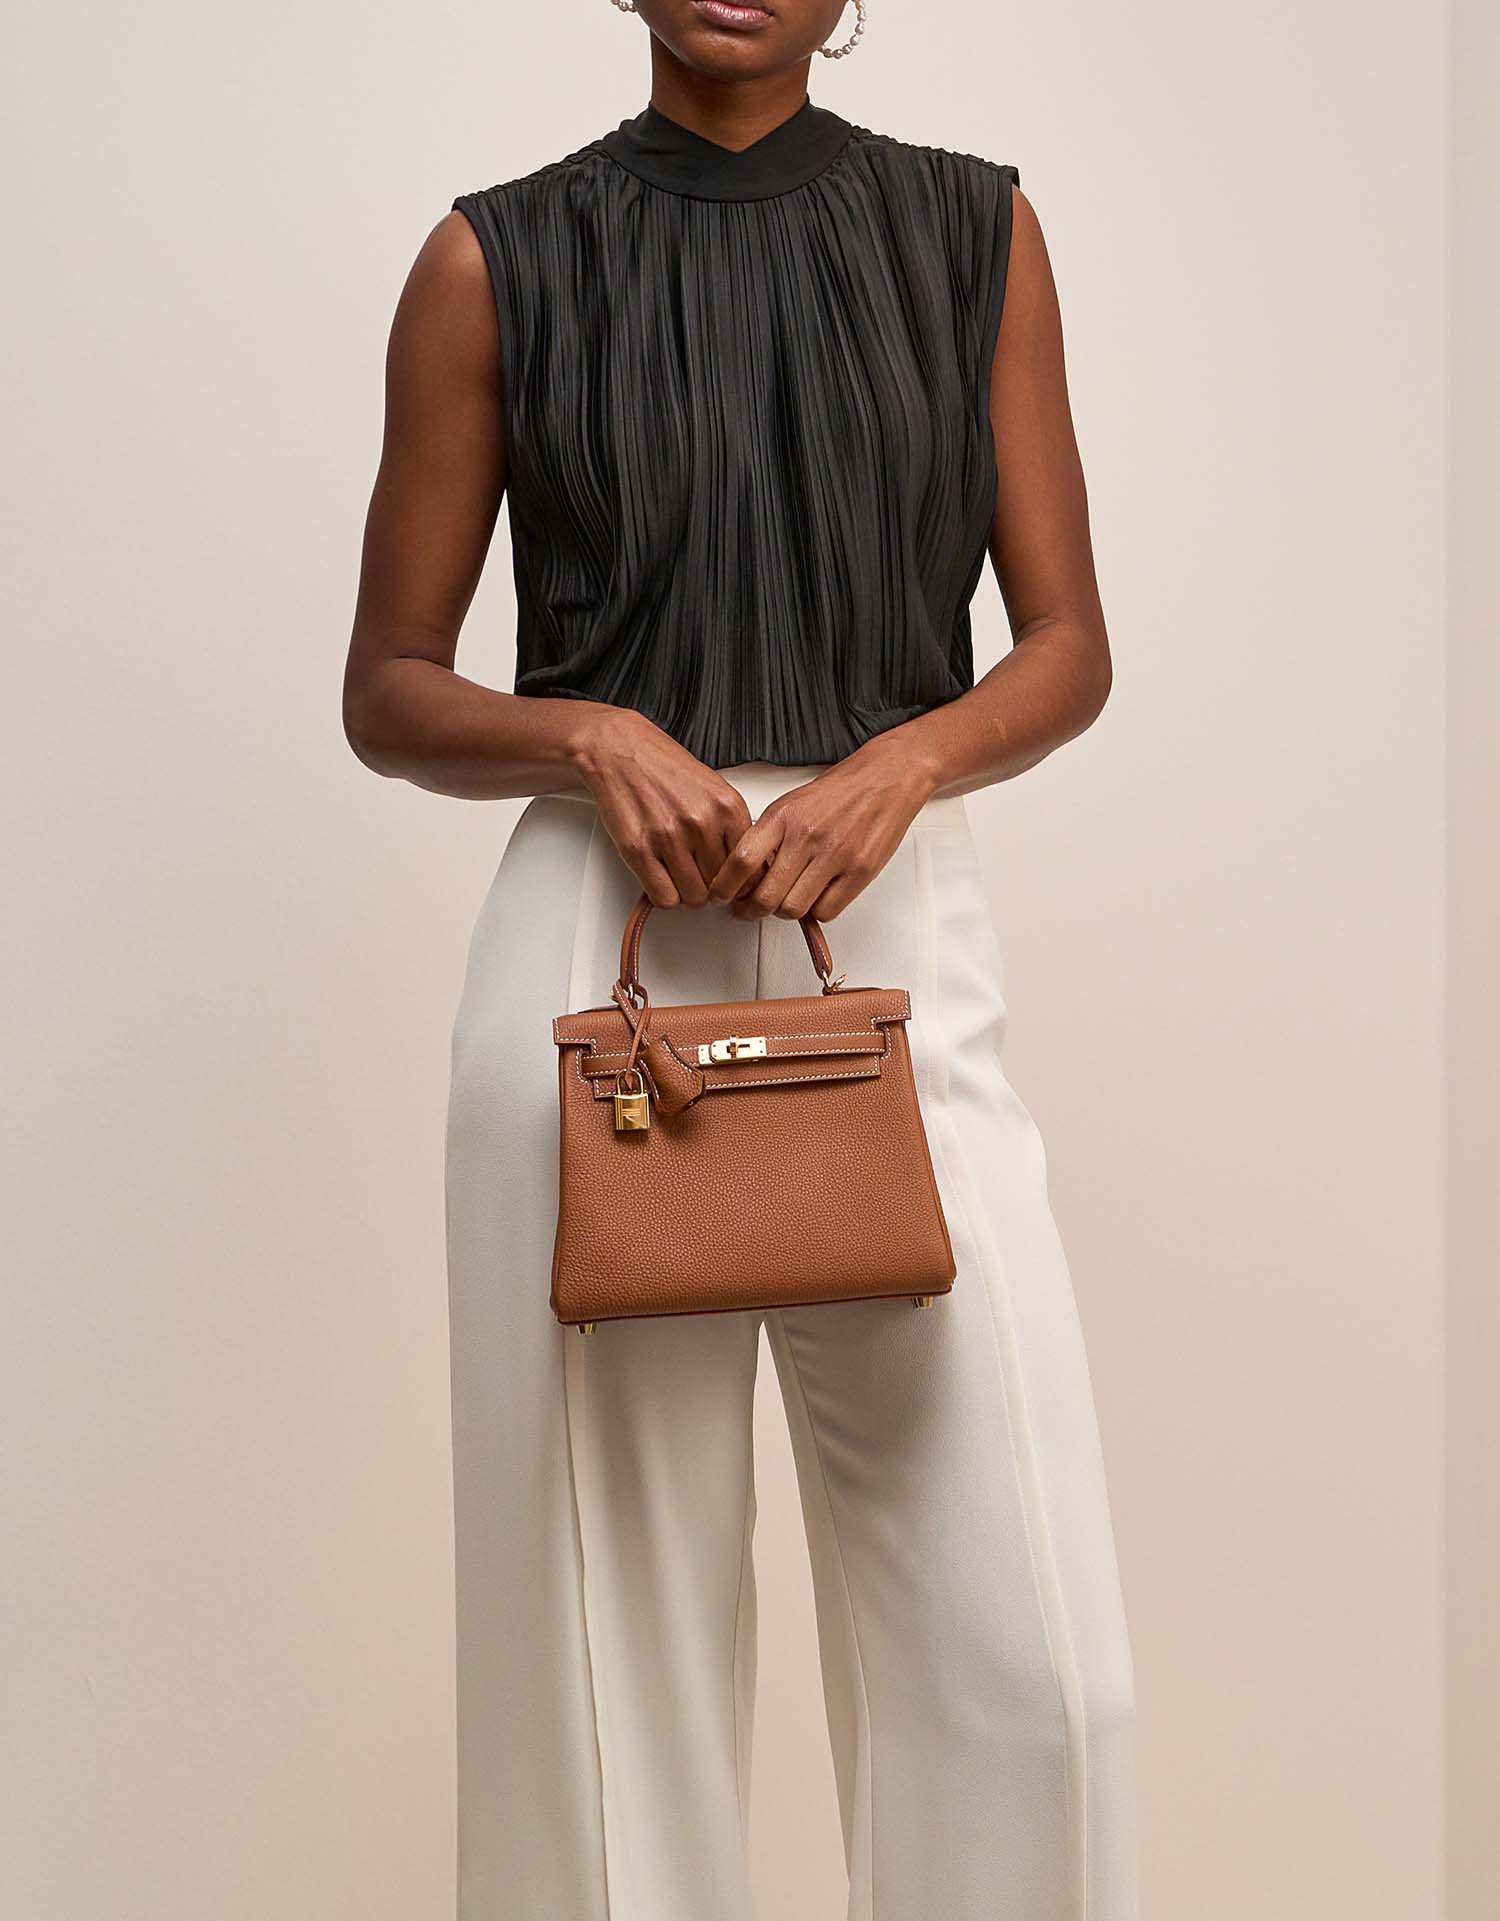 Hermès Kelly 25 Gold auf Model | Verkaufen Sie Ihre Designertasche auf Saclab.com